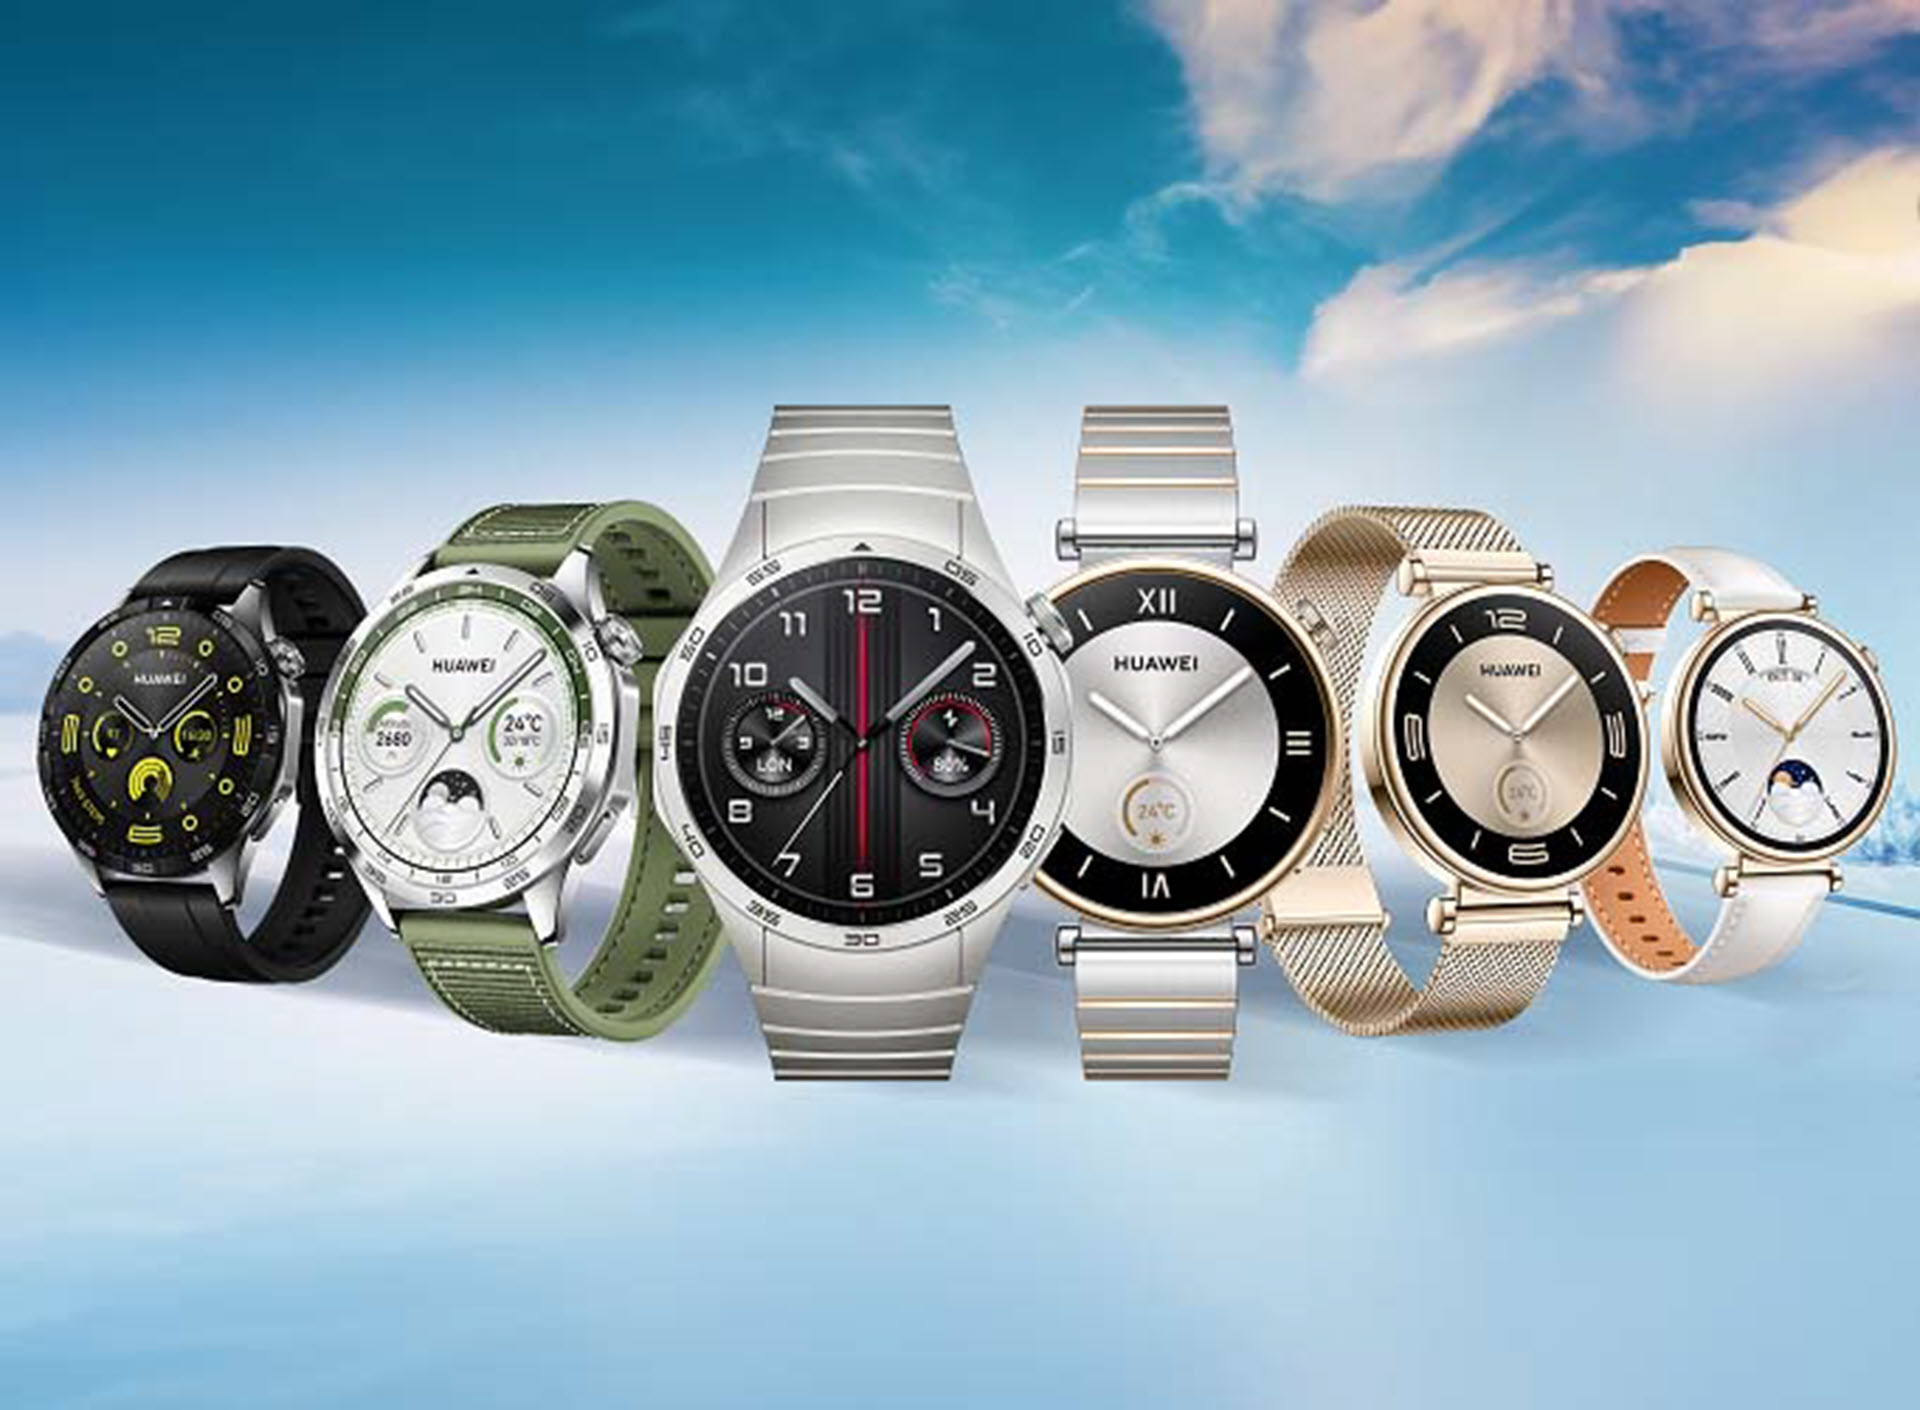 Αναβαθμίστε τον τρόπο ζωής σας με τις προσφορές της Huawei σε Smartwatches και προϊόντα τεχνολογίας!